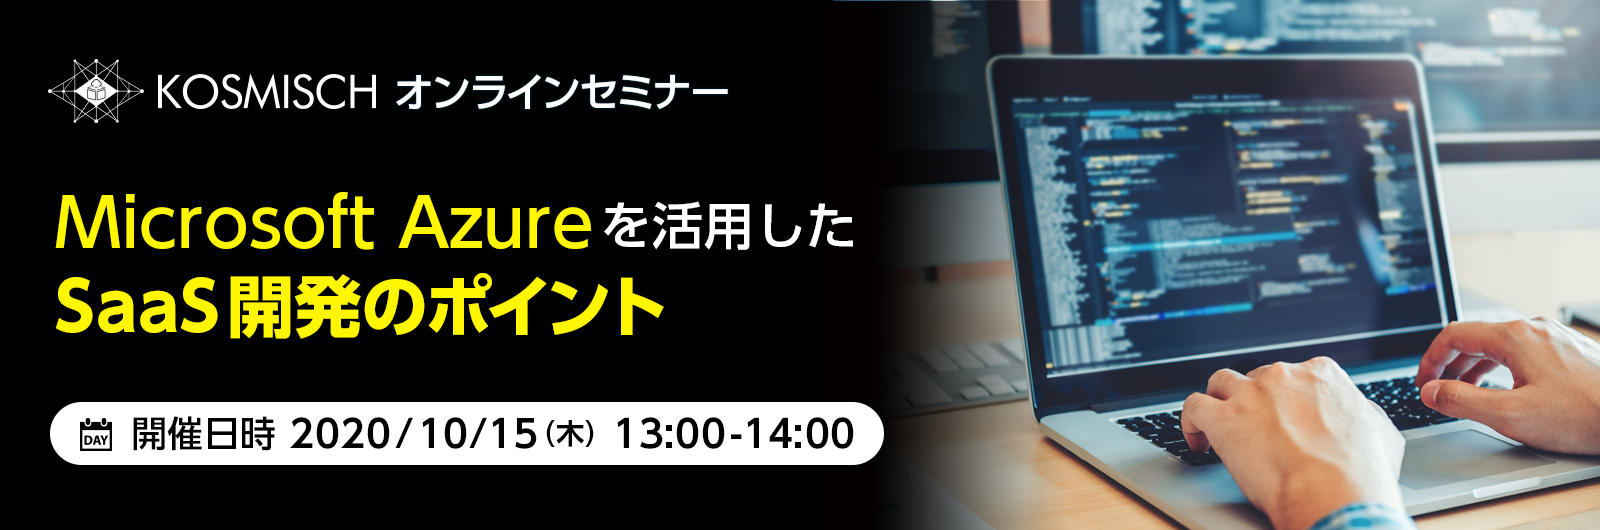 Microsoft Azureを活用したSaaS開発のポイントがテーマのウェビナーを日本マイクロソフトと共催で開催